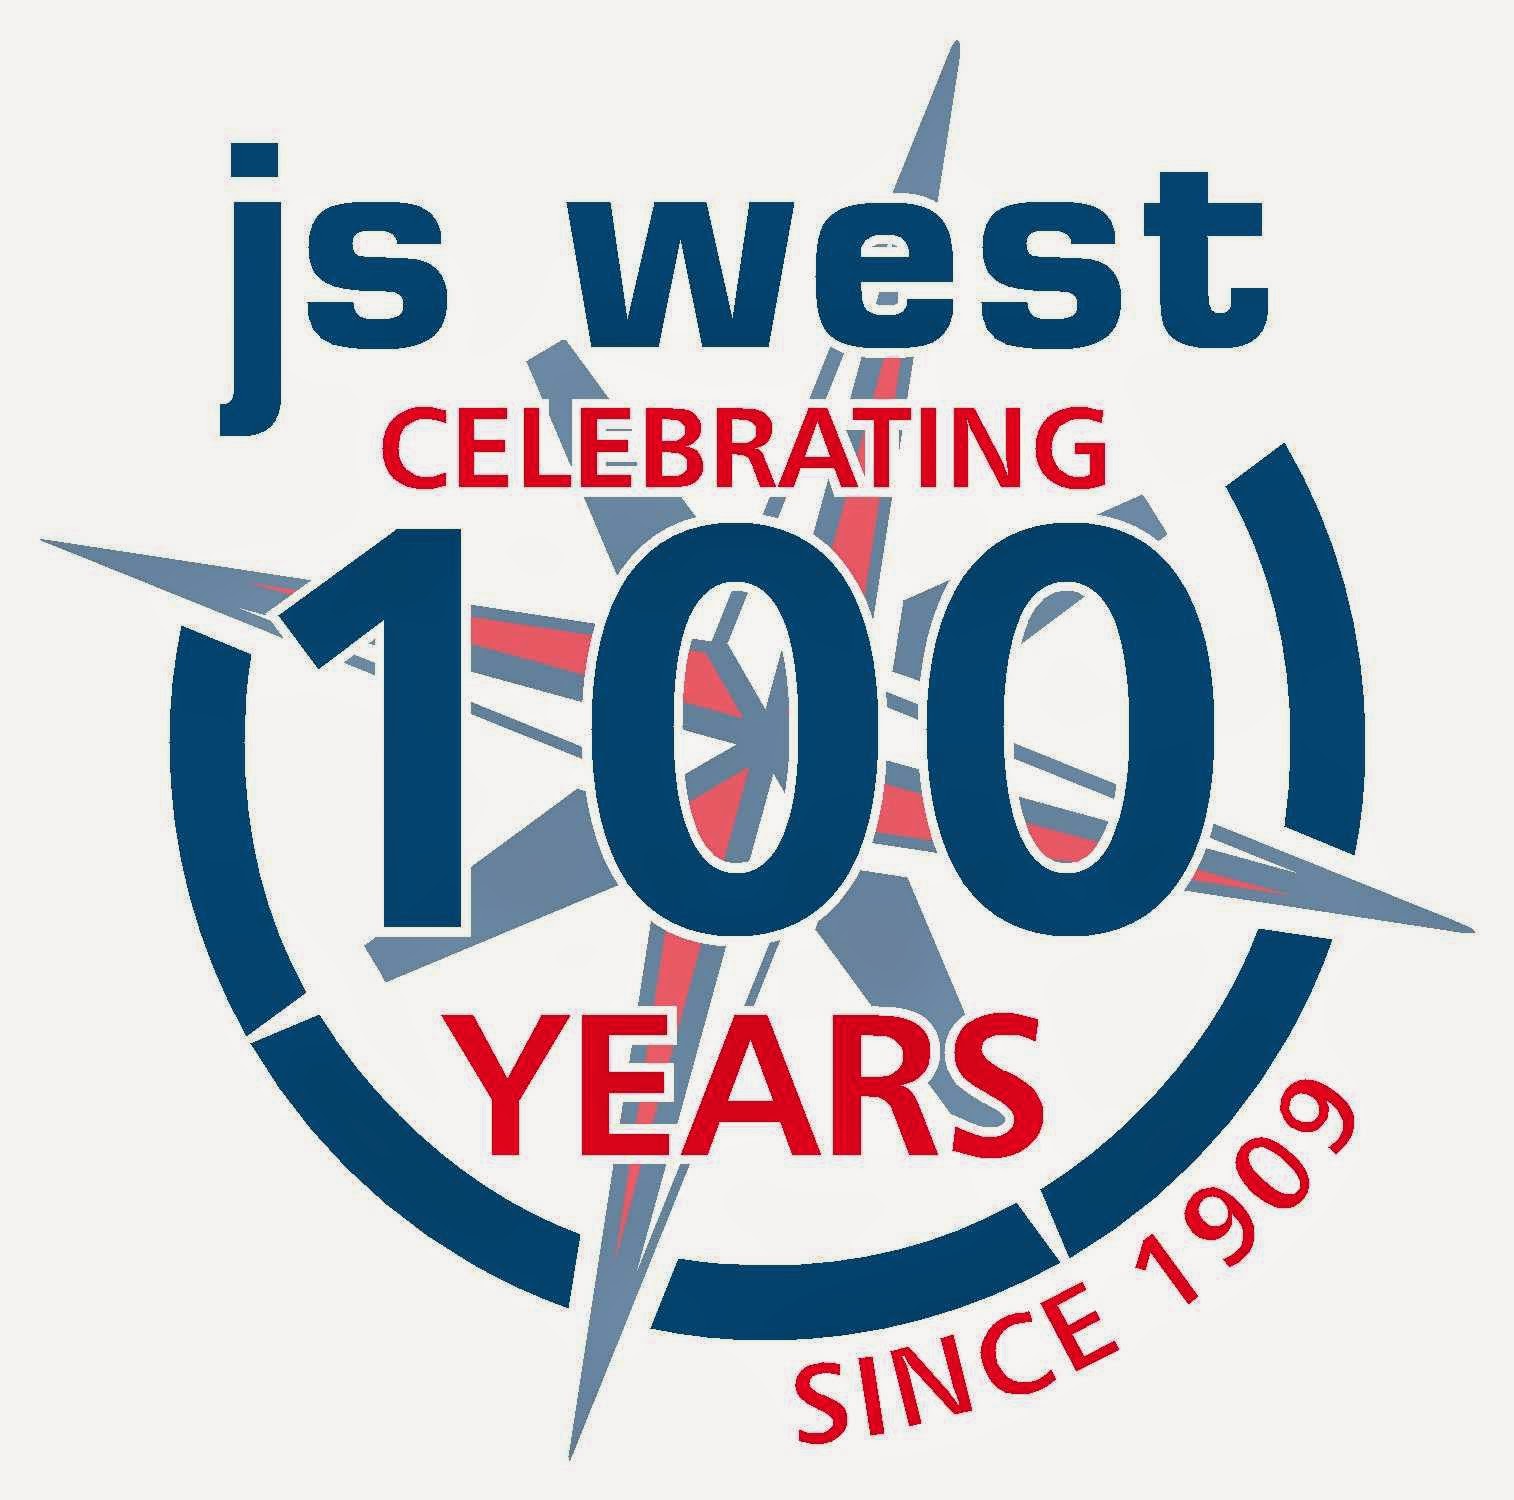 J S West